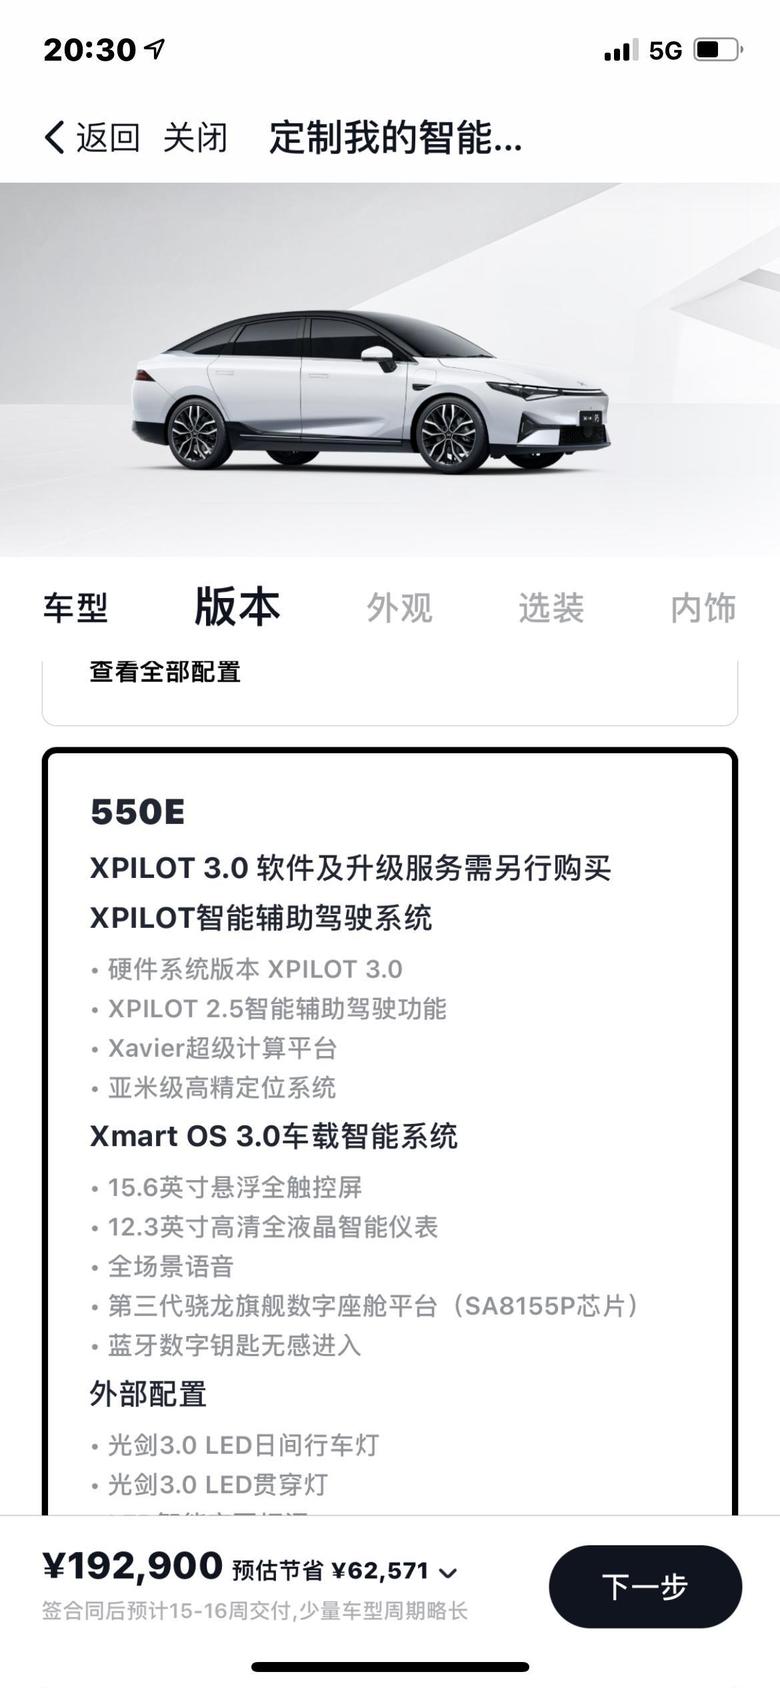 小鹏汽车p5想问一下大家，550G跟550E的区别，多的智能驾驶辅助系统需要额外再买吗？550G支持自动泊车之类的功能吗